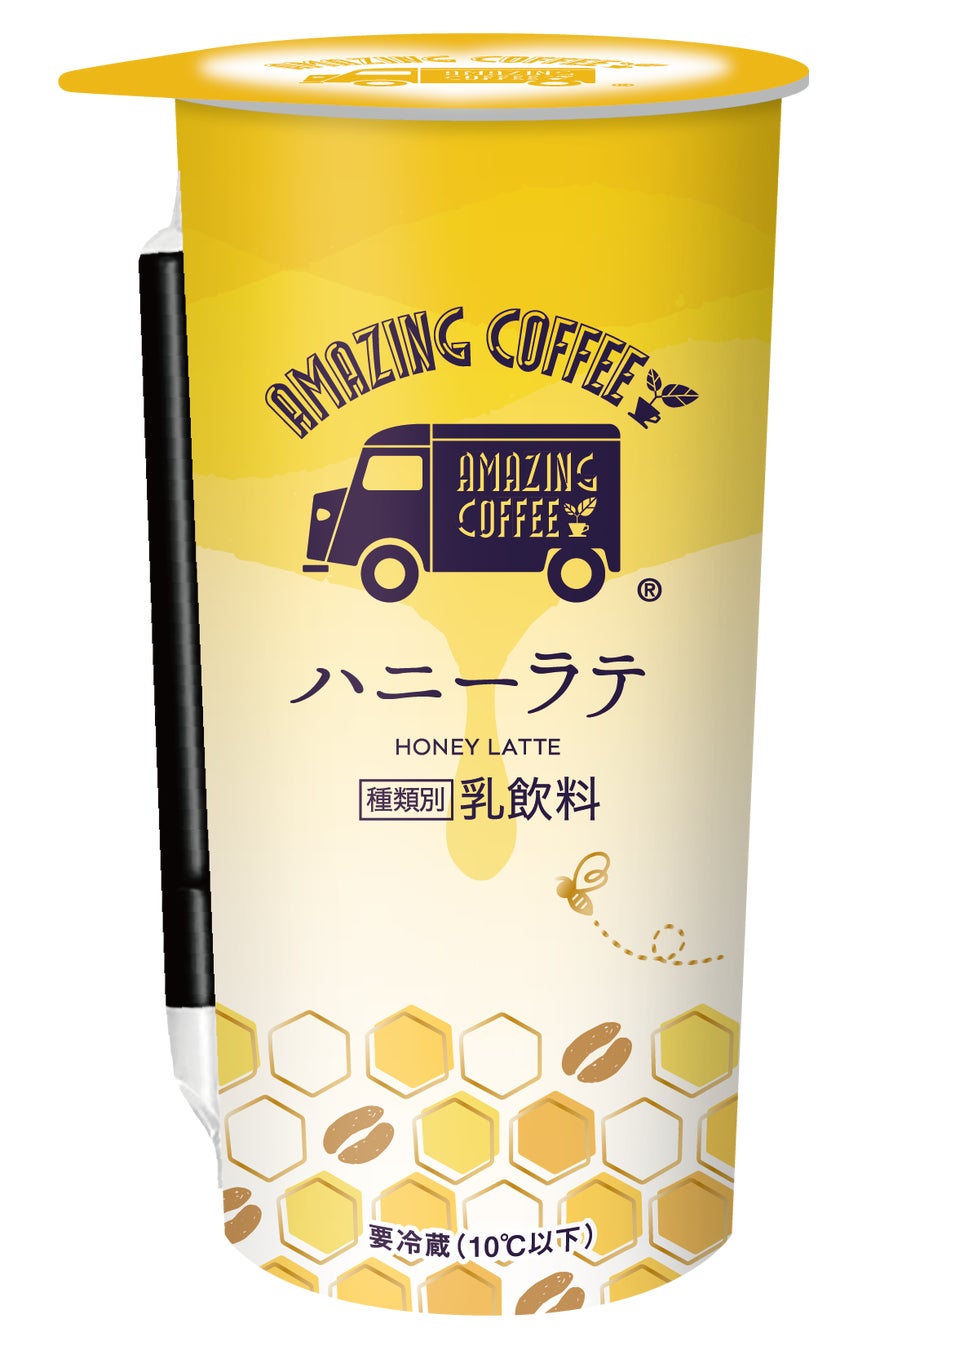 チルドカップ飲料『AMAZING COFFEE　ハニーラテ』発売のお知らせ